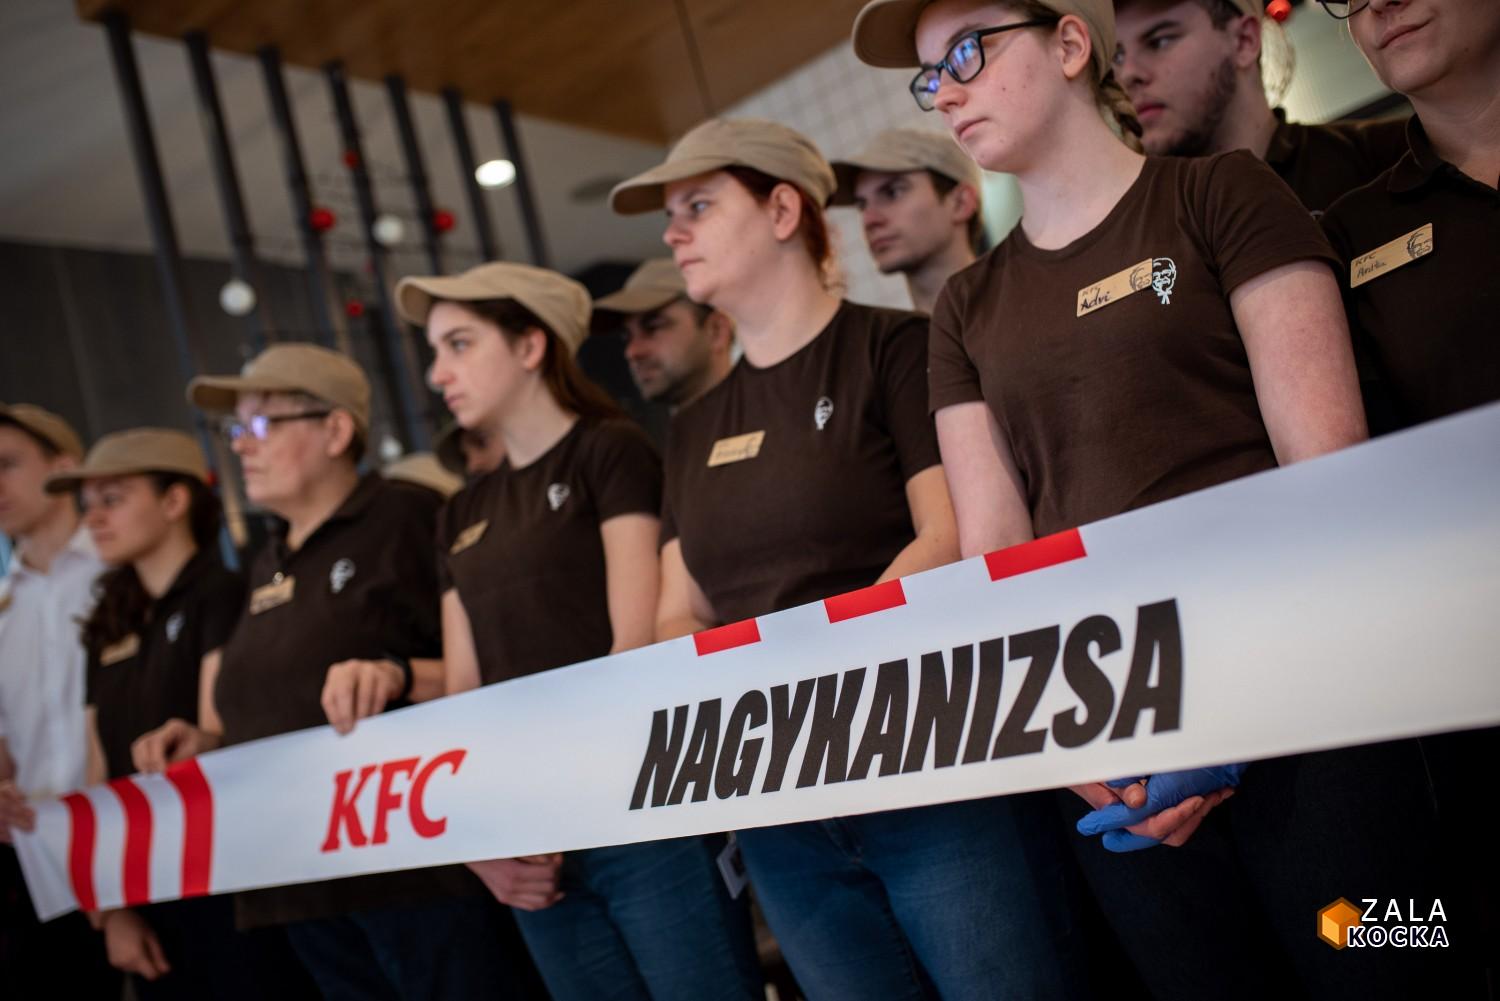 Megnyitott a KFC nagykanizsai gyorsétterme